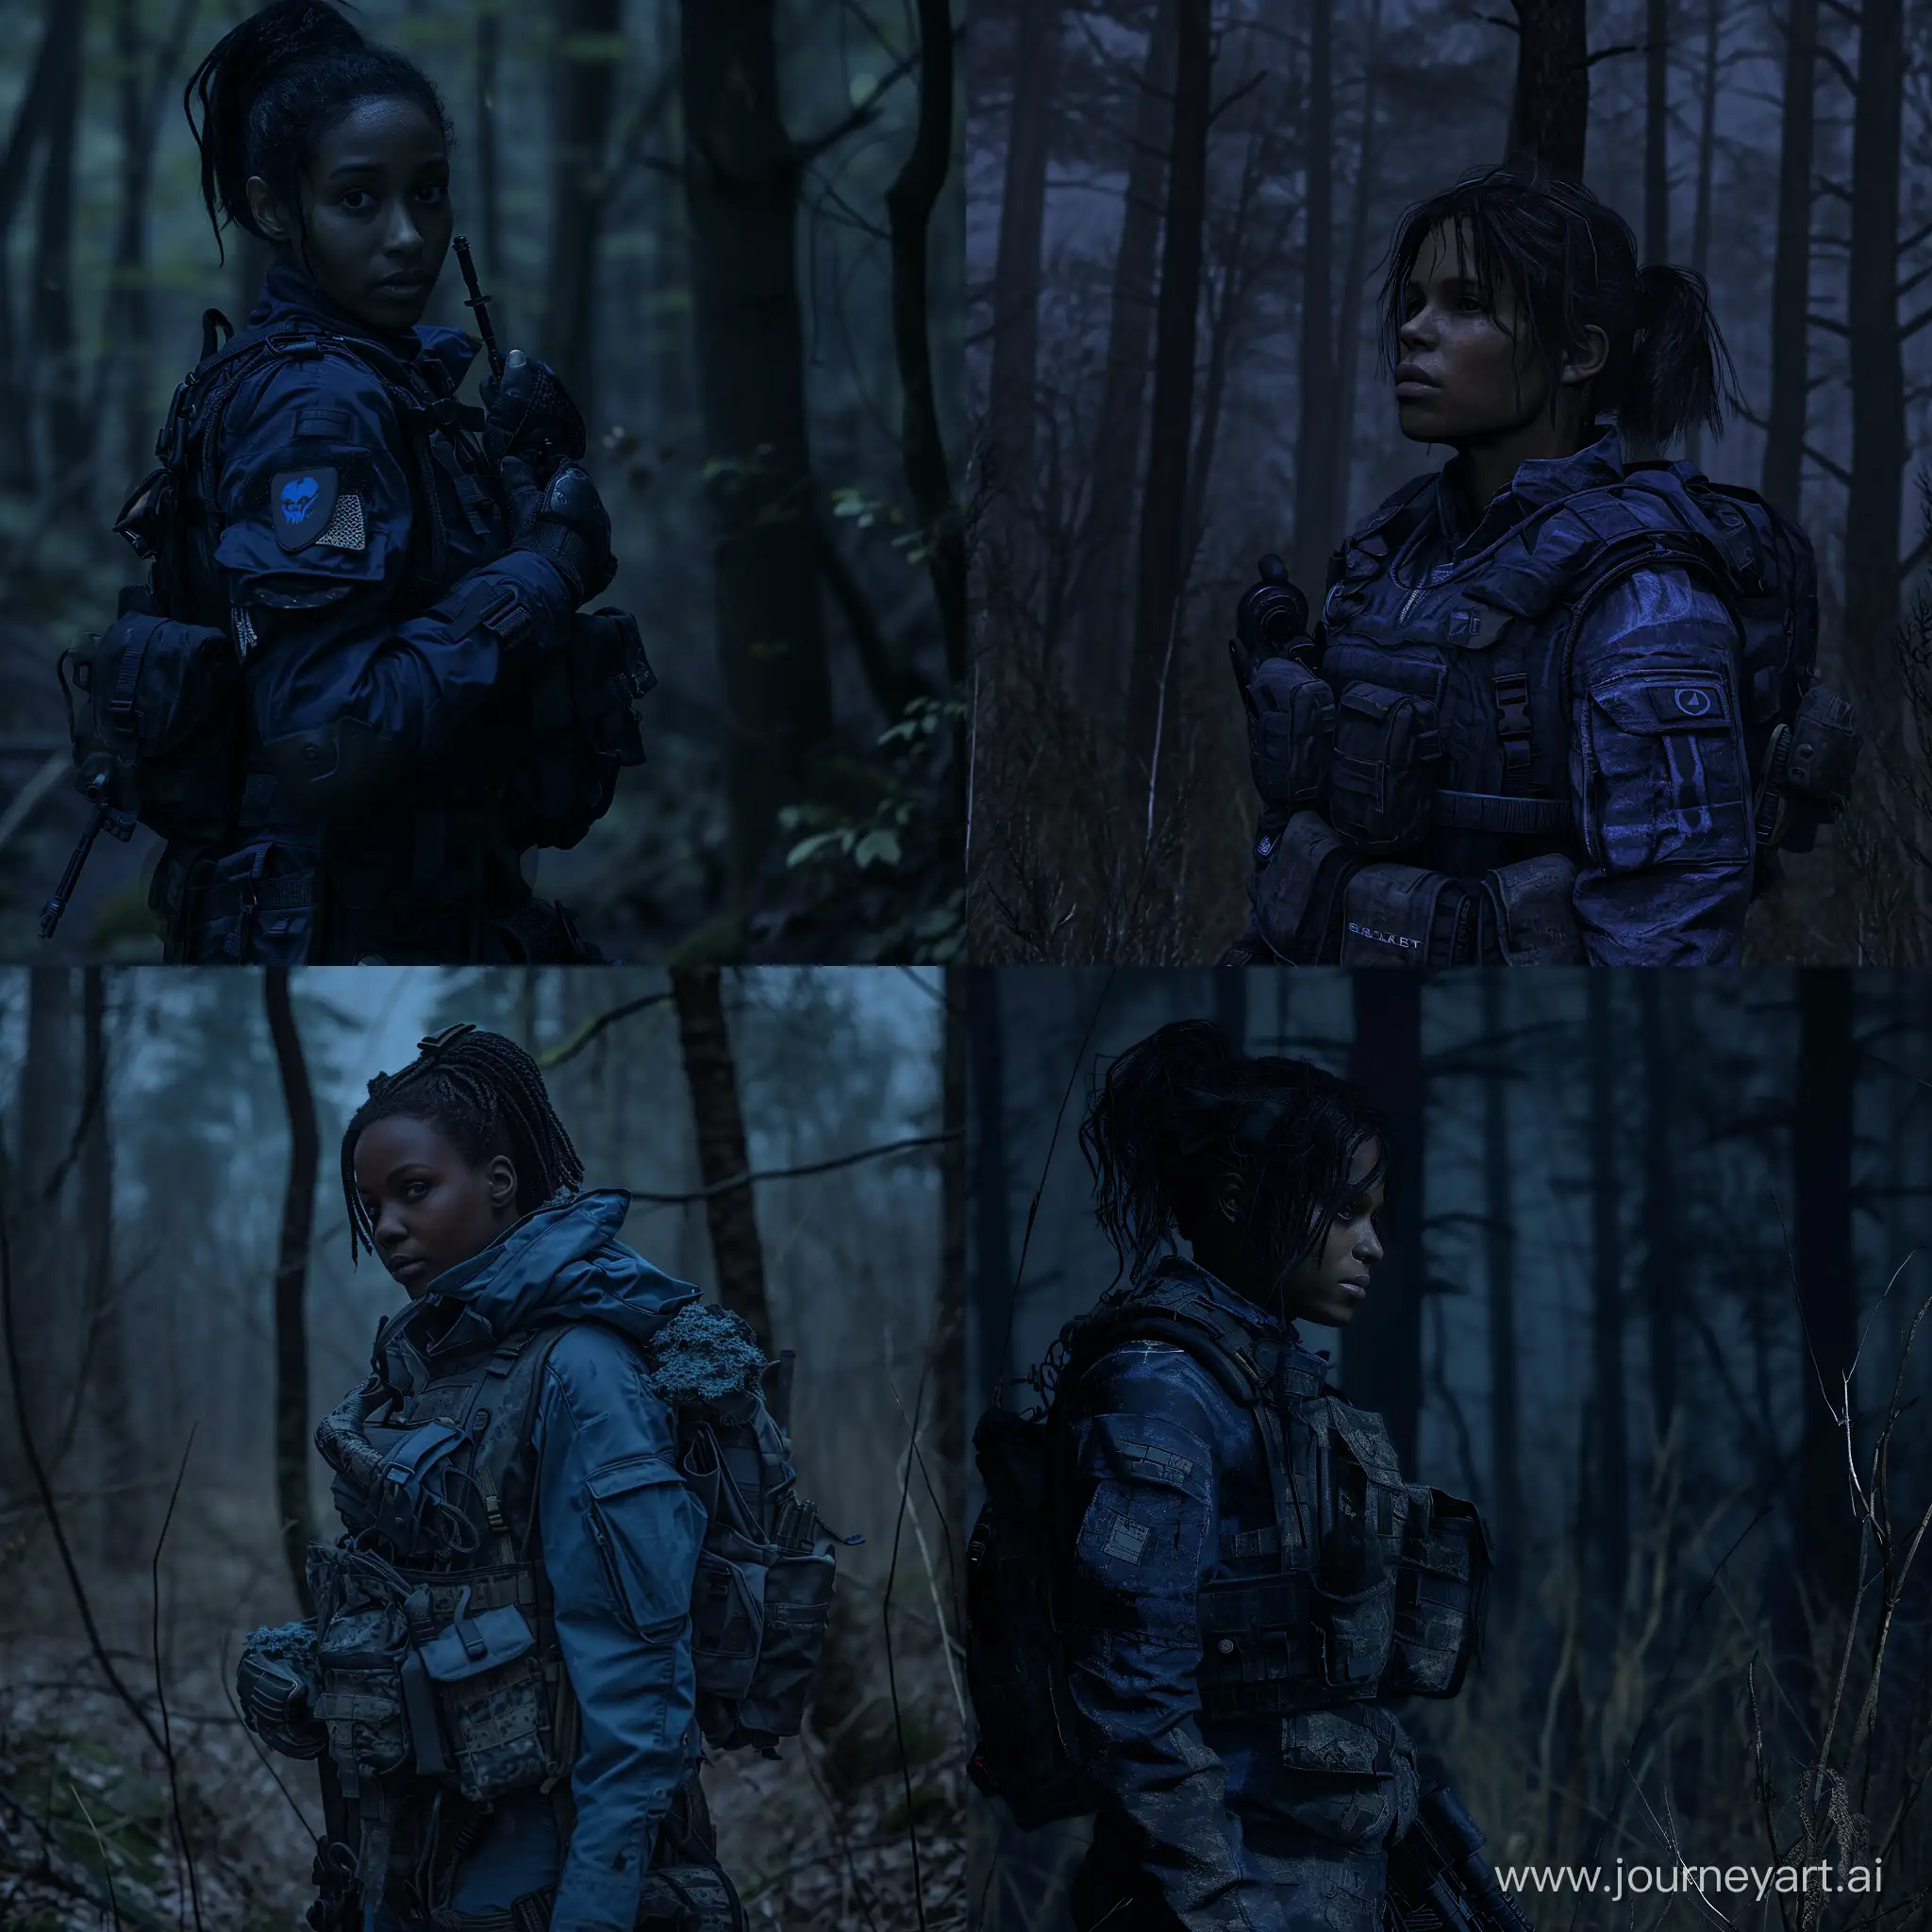 Darkskinned-Mercenary-Sheva-Alomar-in-STALKER-with-Tactical-Equipment-in-a-Dark-Forest